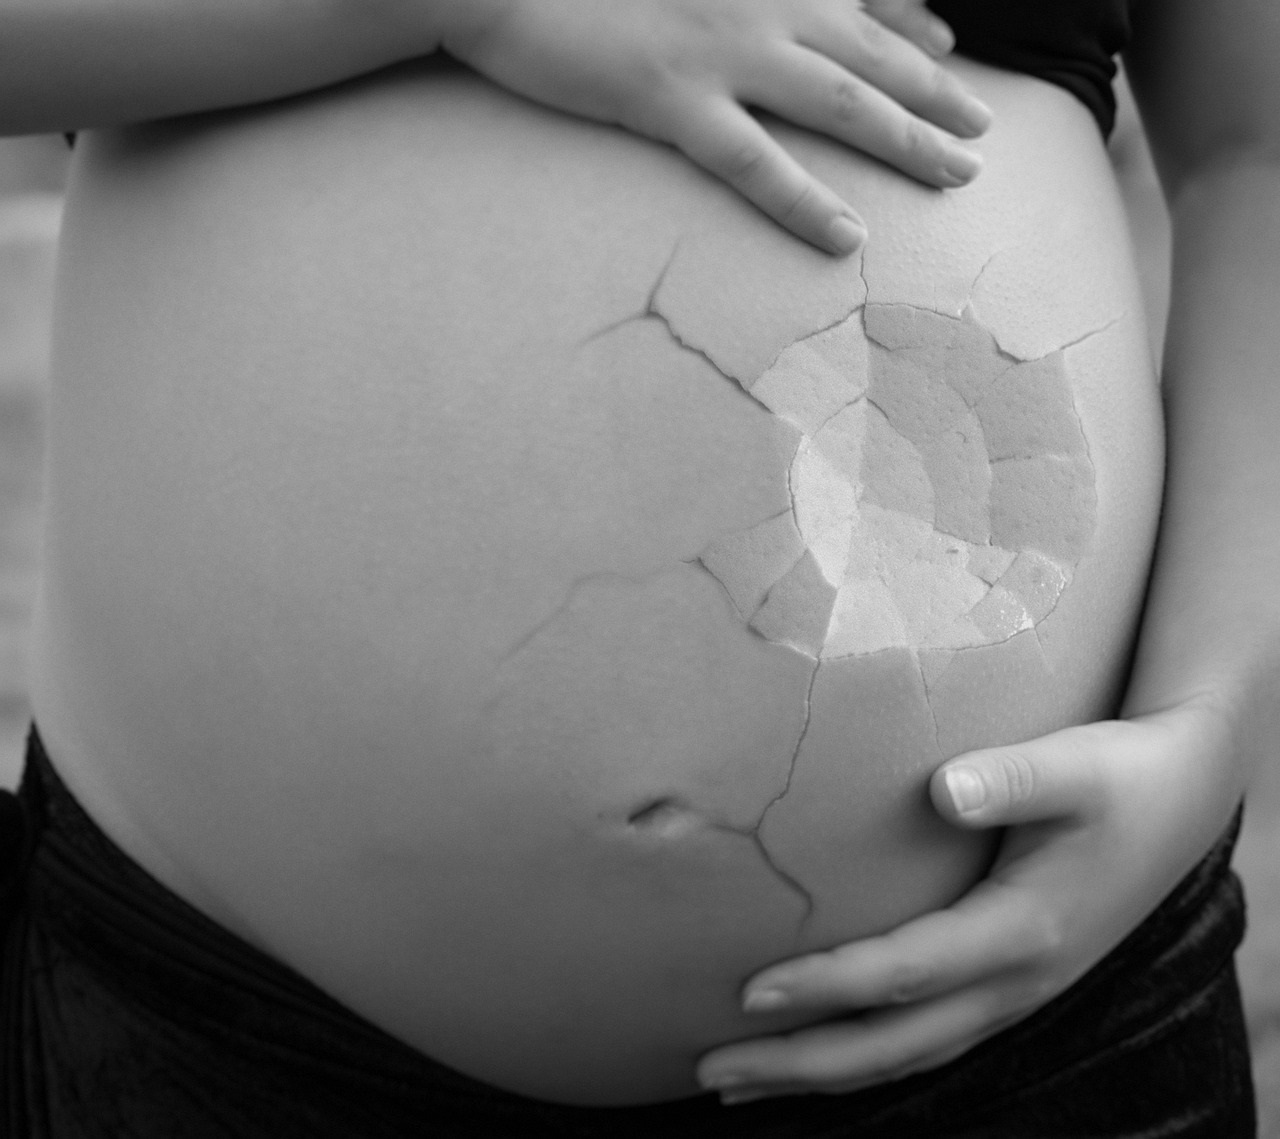 Aborto all’ottavo mese di gravidanza: due ginecologi accusati di omicidio colposo